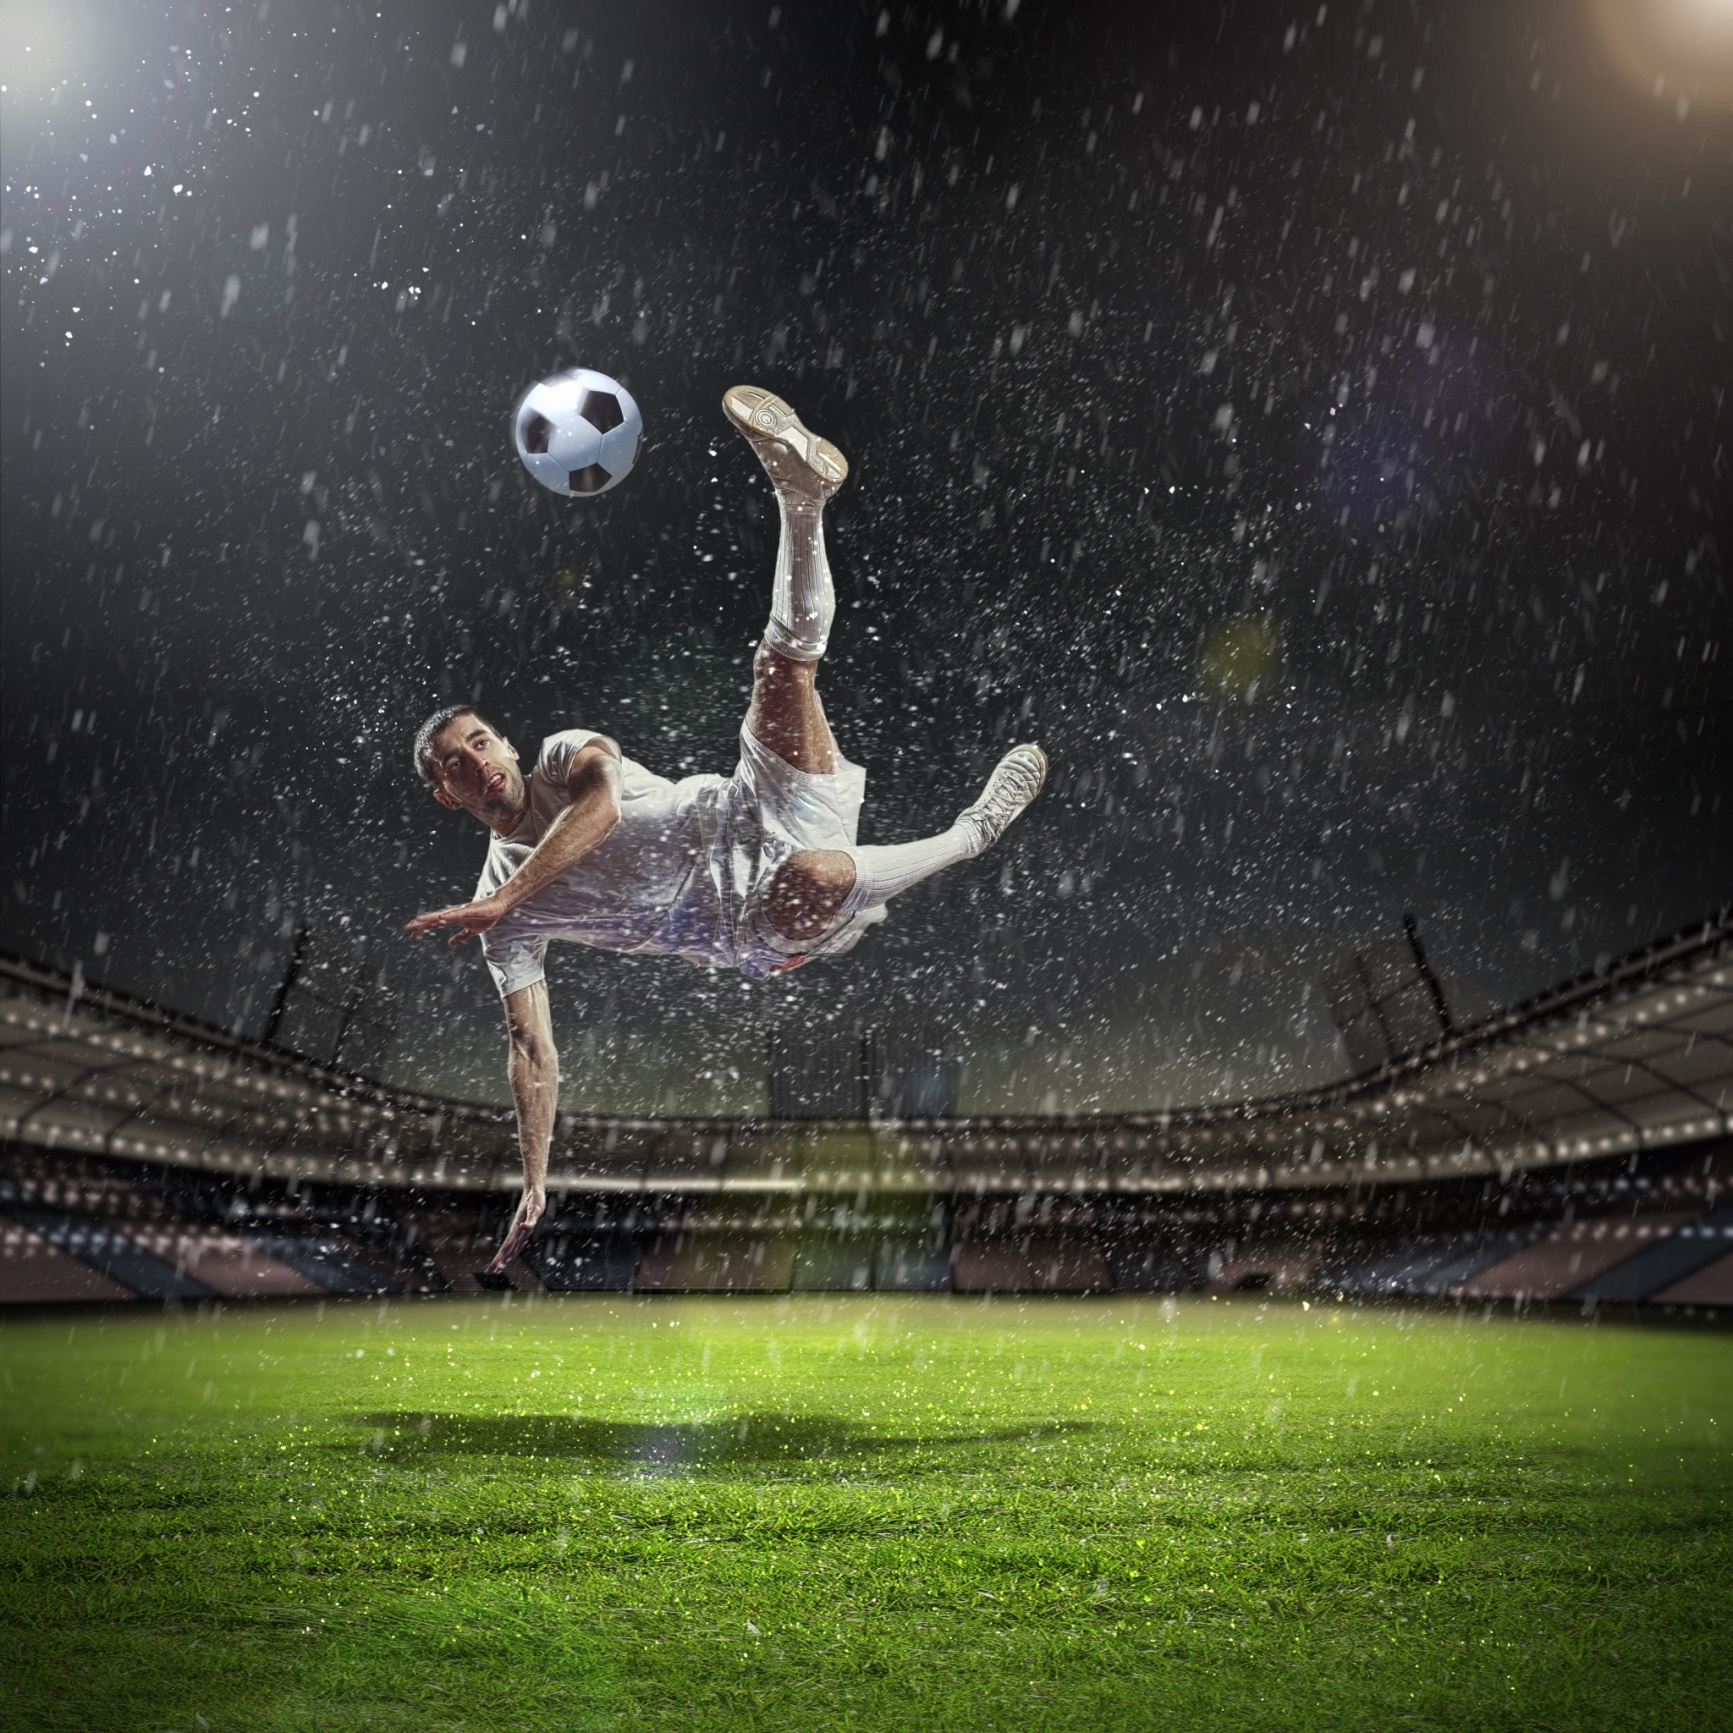 Soccer-in-the-rain